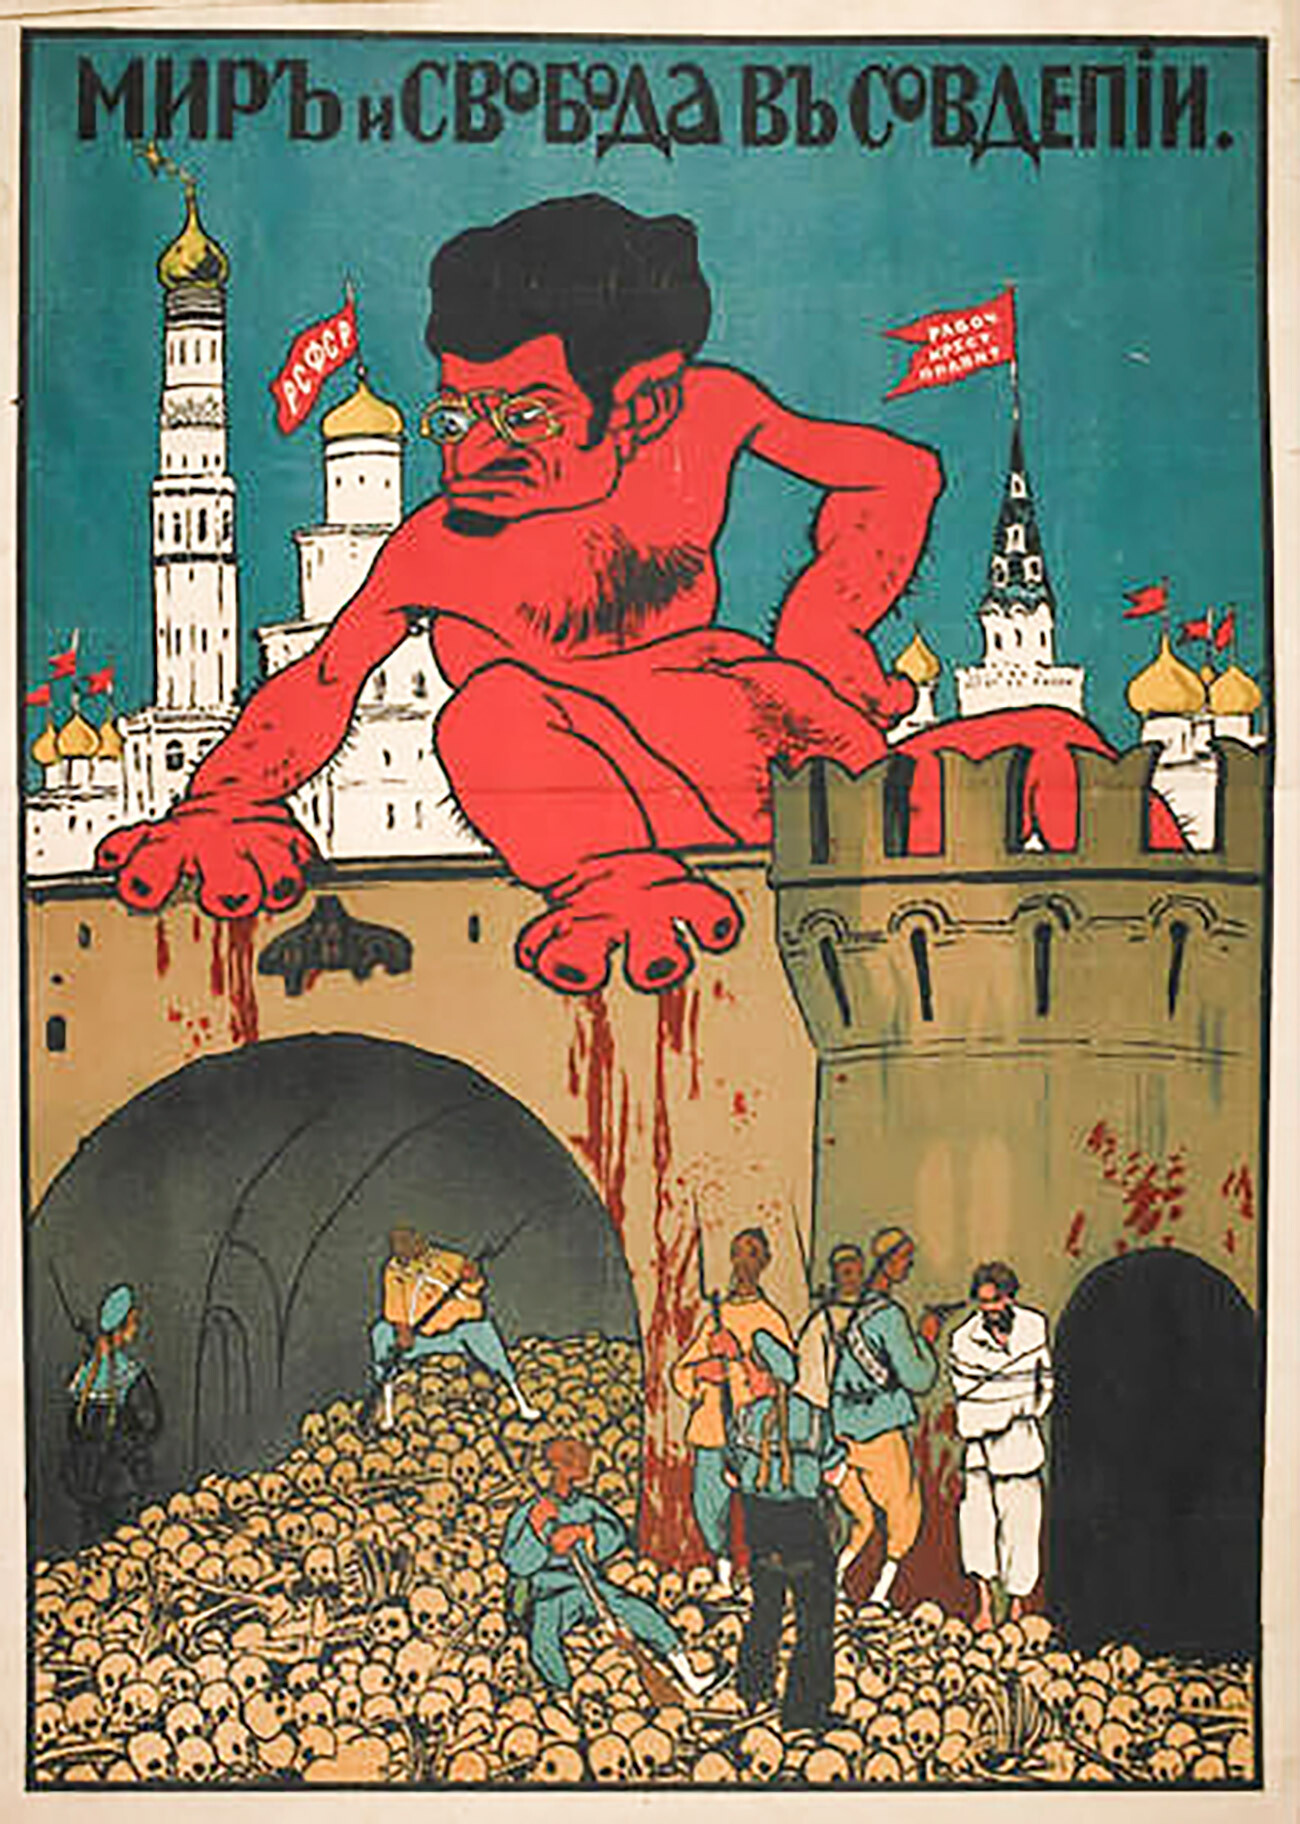 “La pace e la libertà del deputato del soviet”. Manifesto antibolscevico con Trotskij transformato in un mostro assetato di sangue